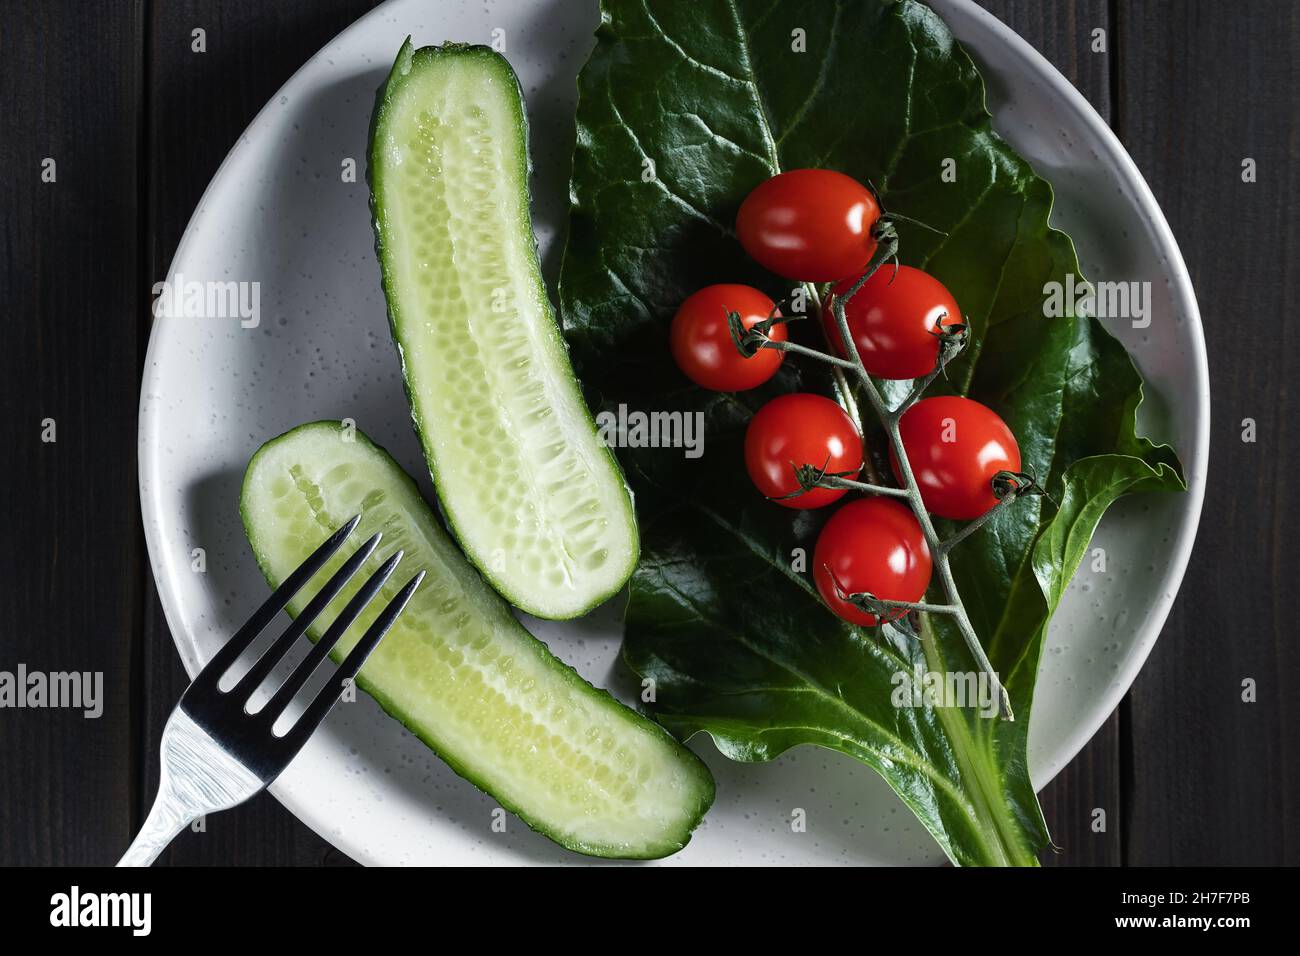 Légumes frais et herbes dans une assiette sur une table en bois.Concept de végétarisme et alimentation saine. Banque D'Images